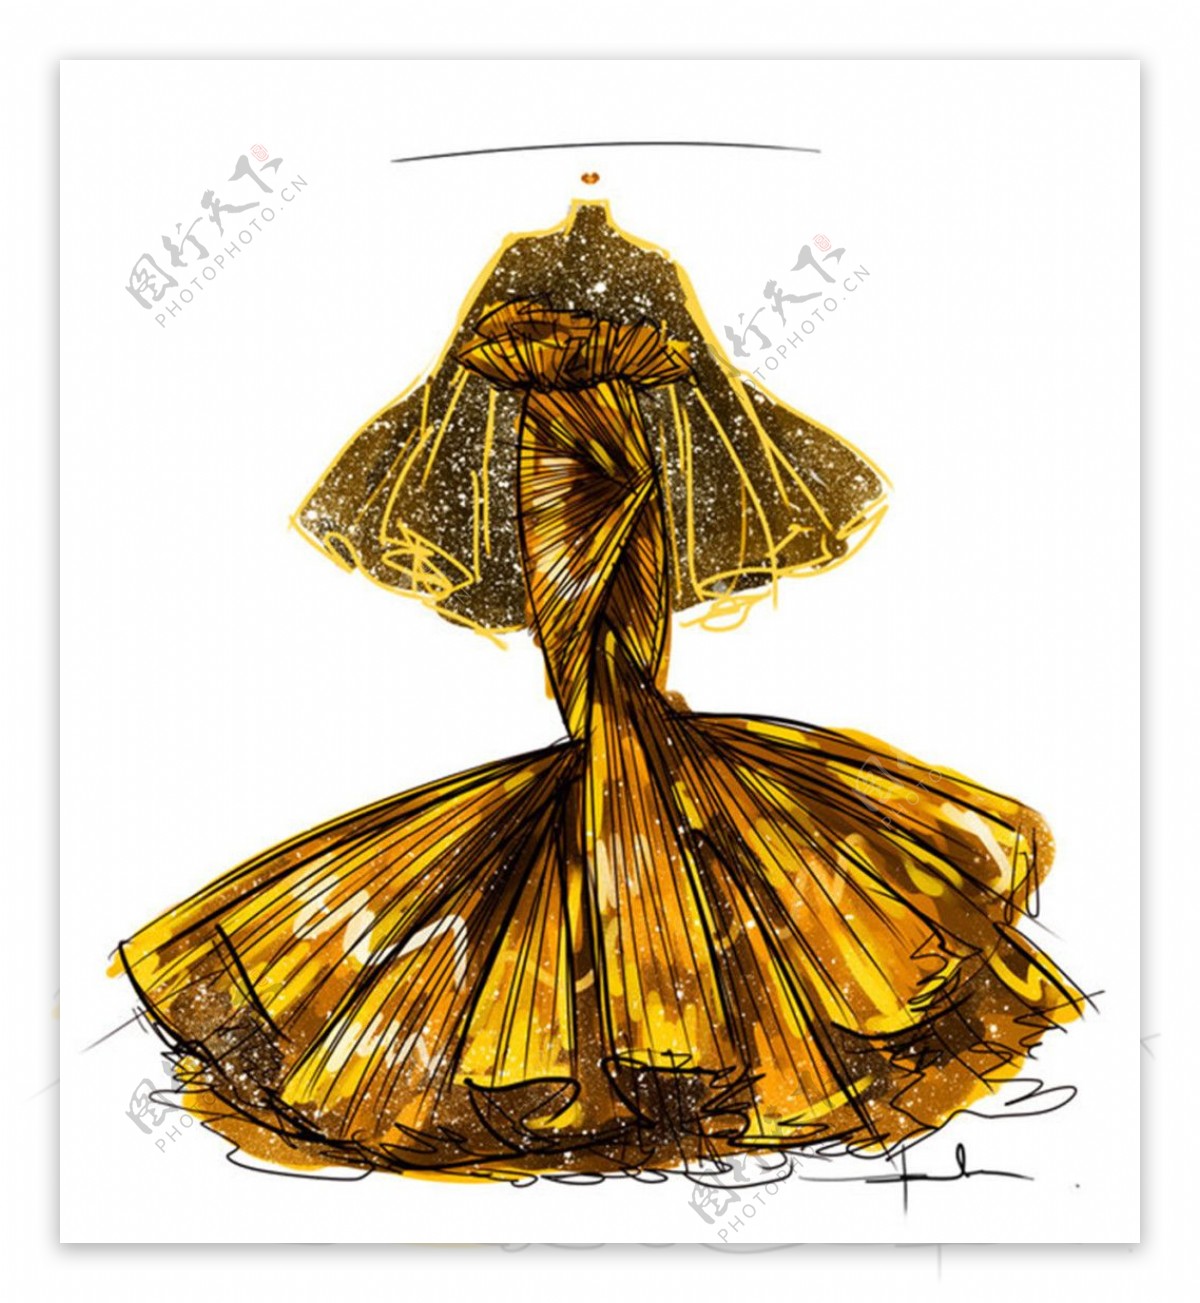 金色长裙礼服设计图